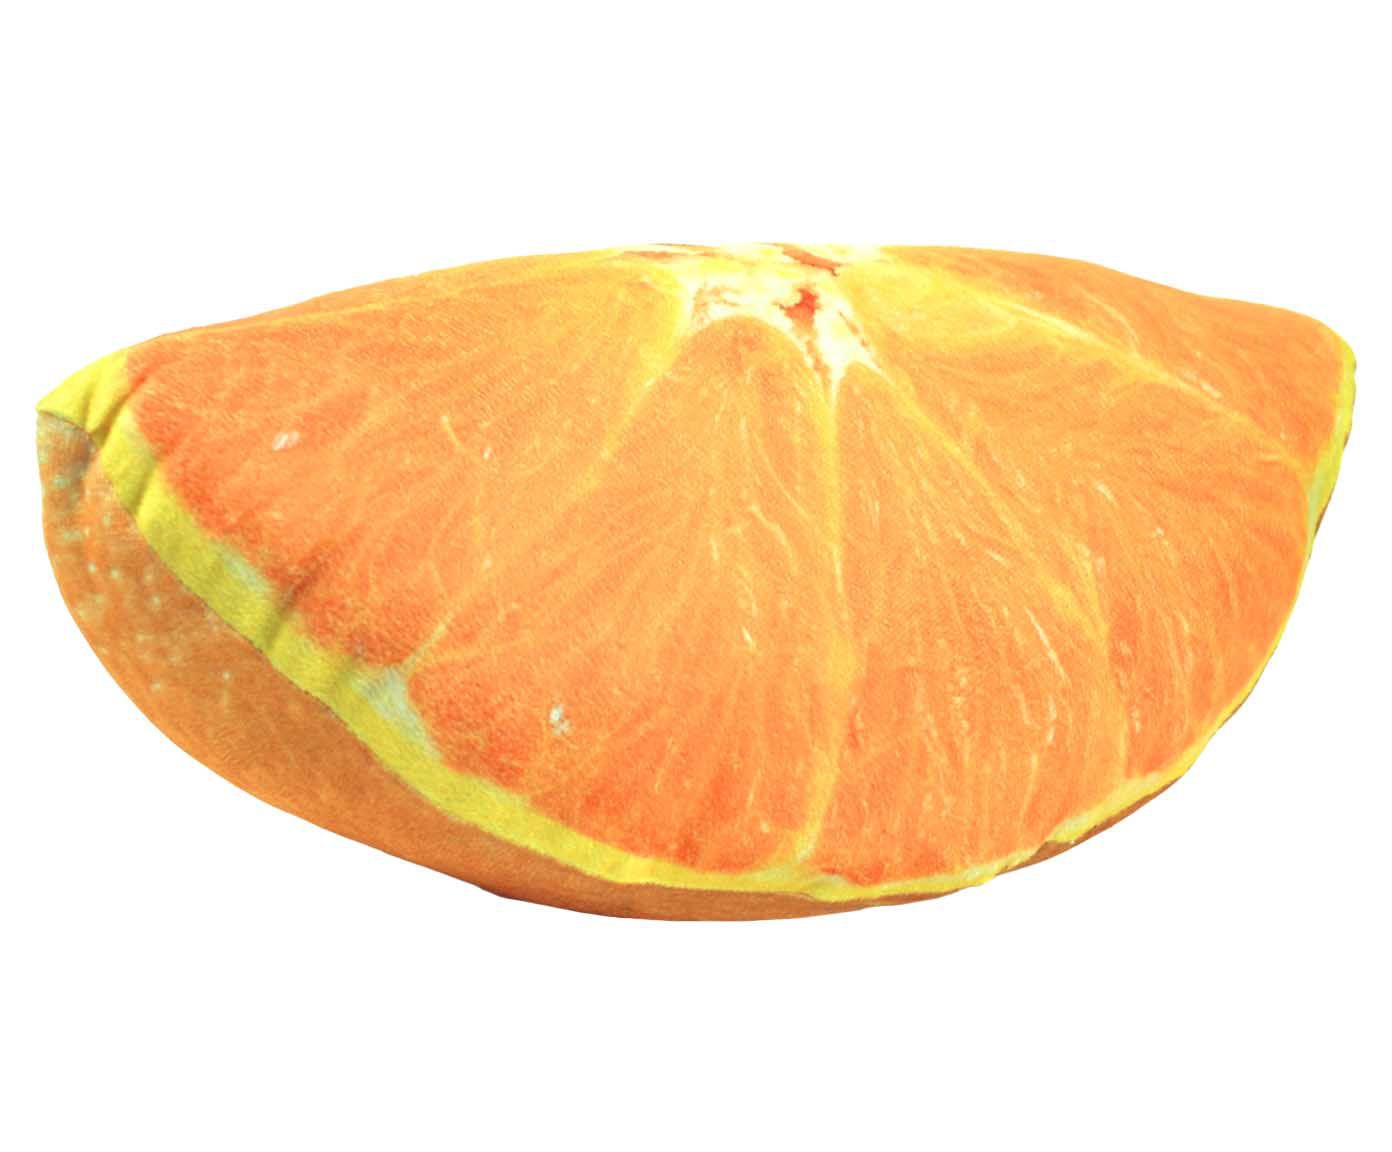 Almofada pelúcia gomo de laranja | Westwing.com.br